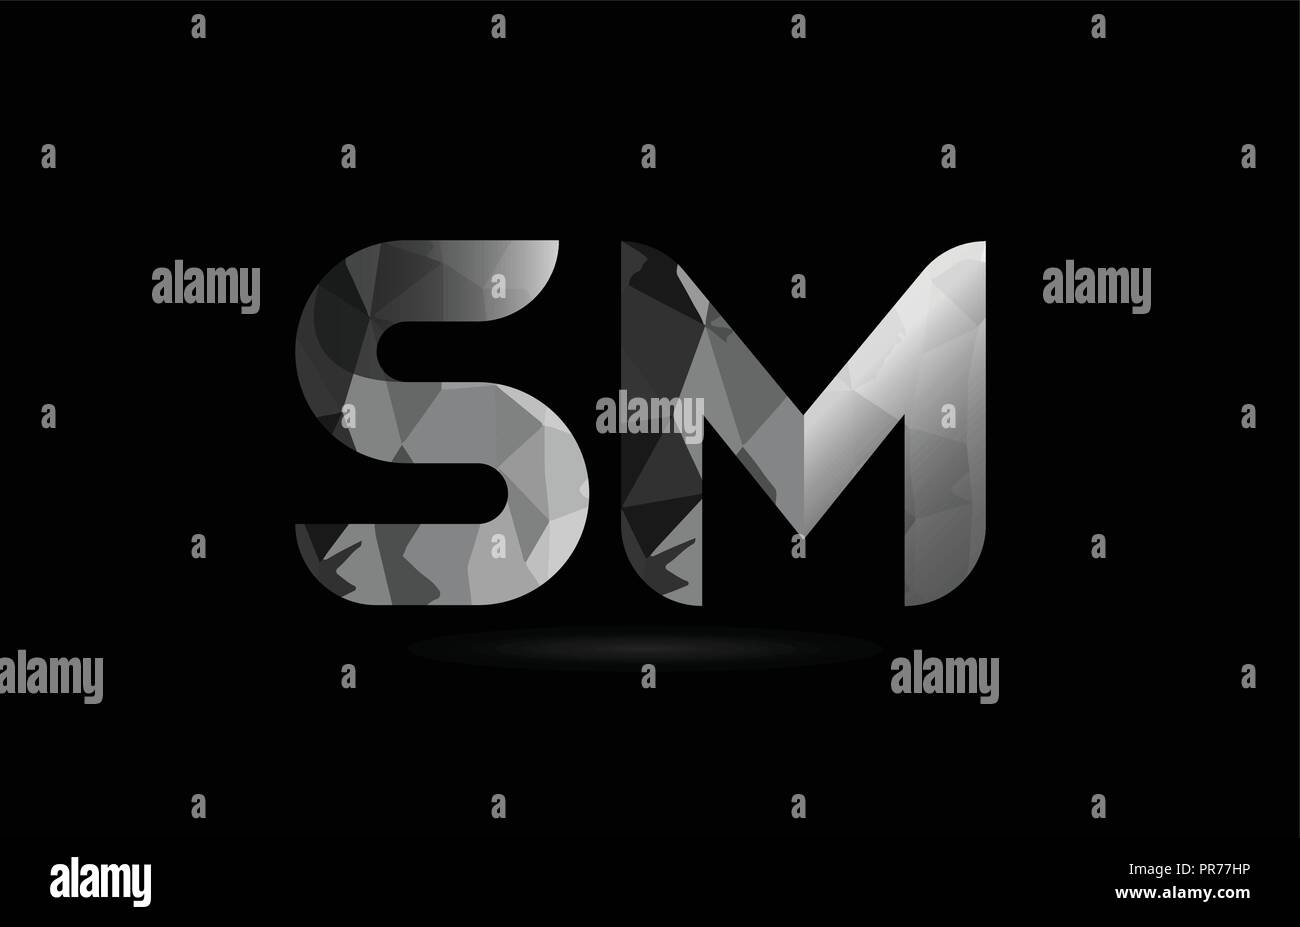 Blanco Y Negro Letra Del Alfabeto Sm S M Logo Diseno De Combinacion Adecuada Para Una Empresa O Negocio Imagen Vector De Stock Alamy